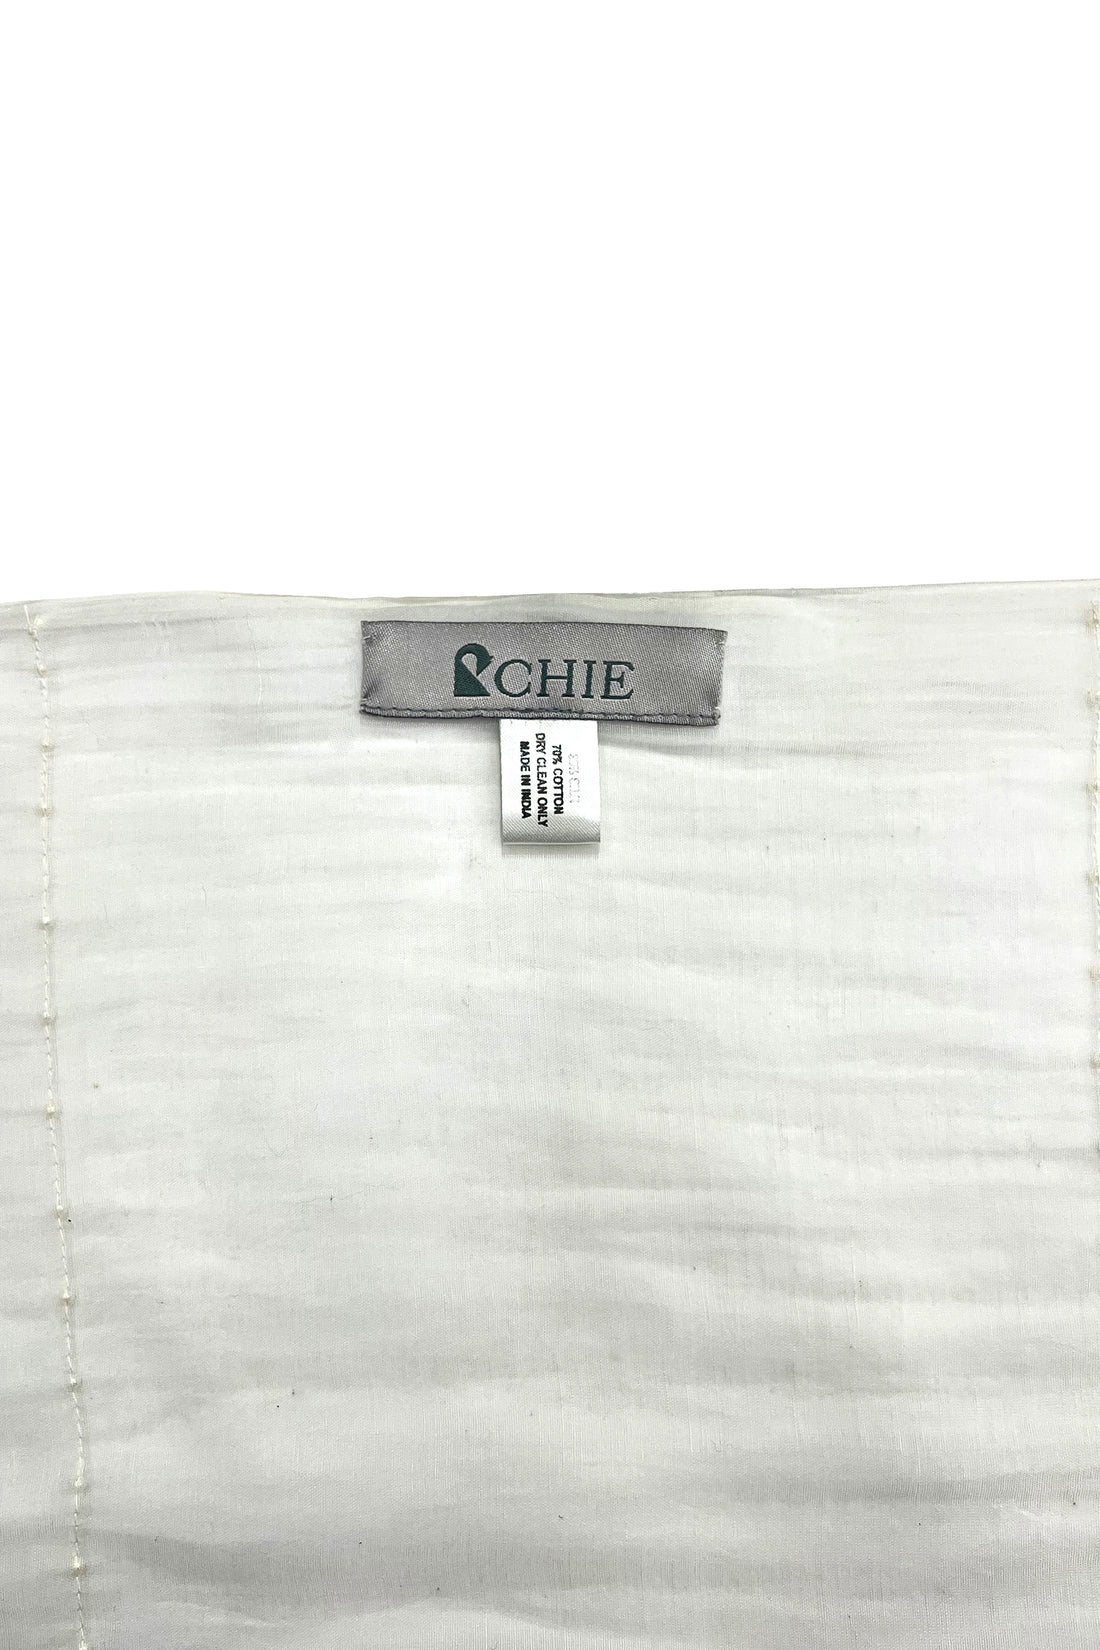 CHIE IMAI スカーフ コレクション - パール・オブ・インディア "ホワイト"